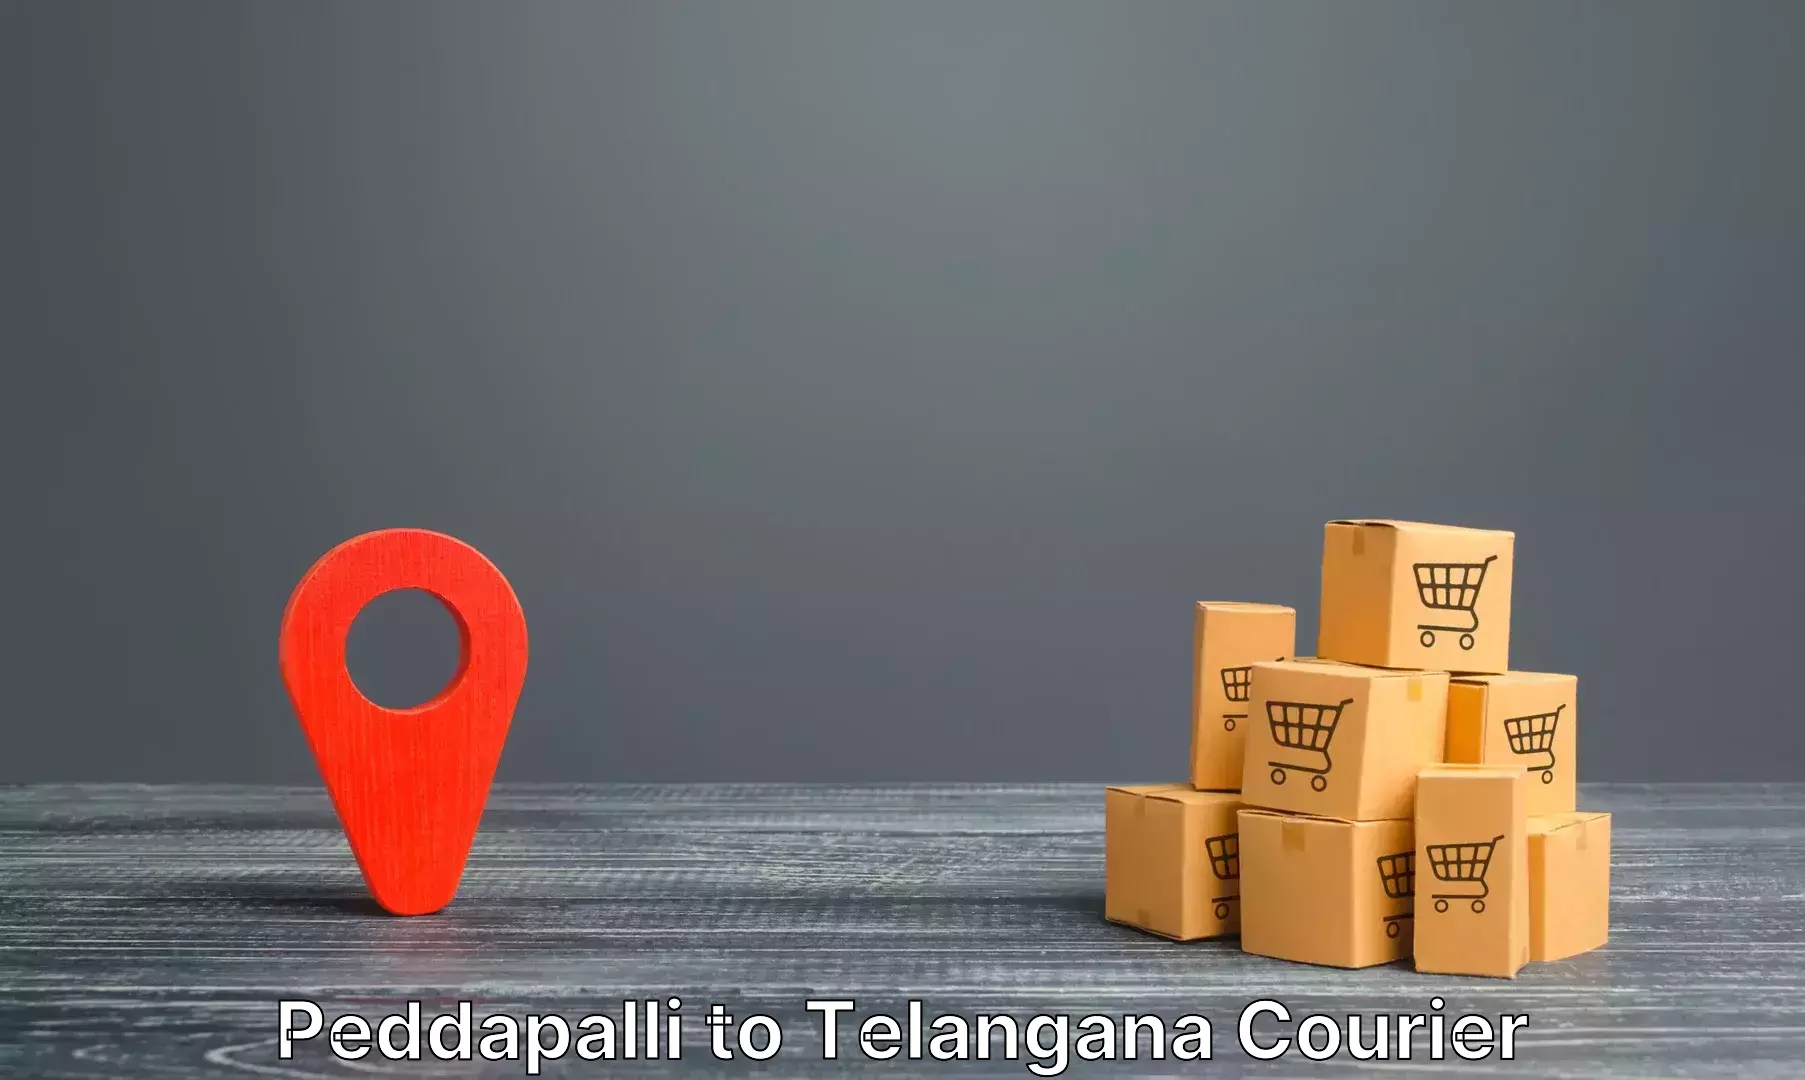 Luggage delivery providers Peddapalli to Nalgonda